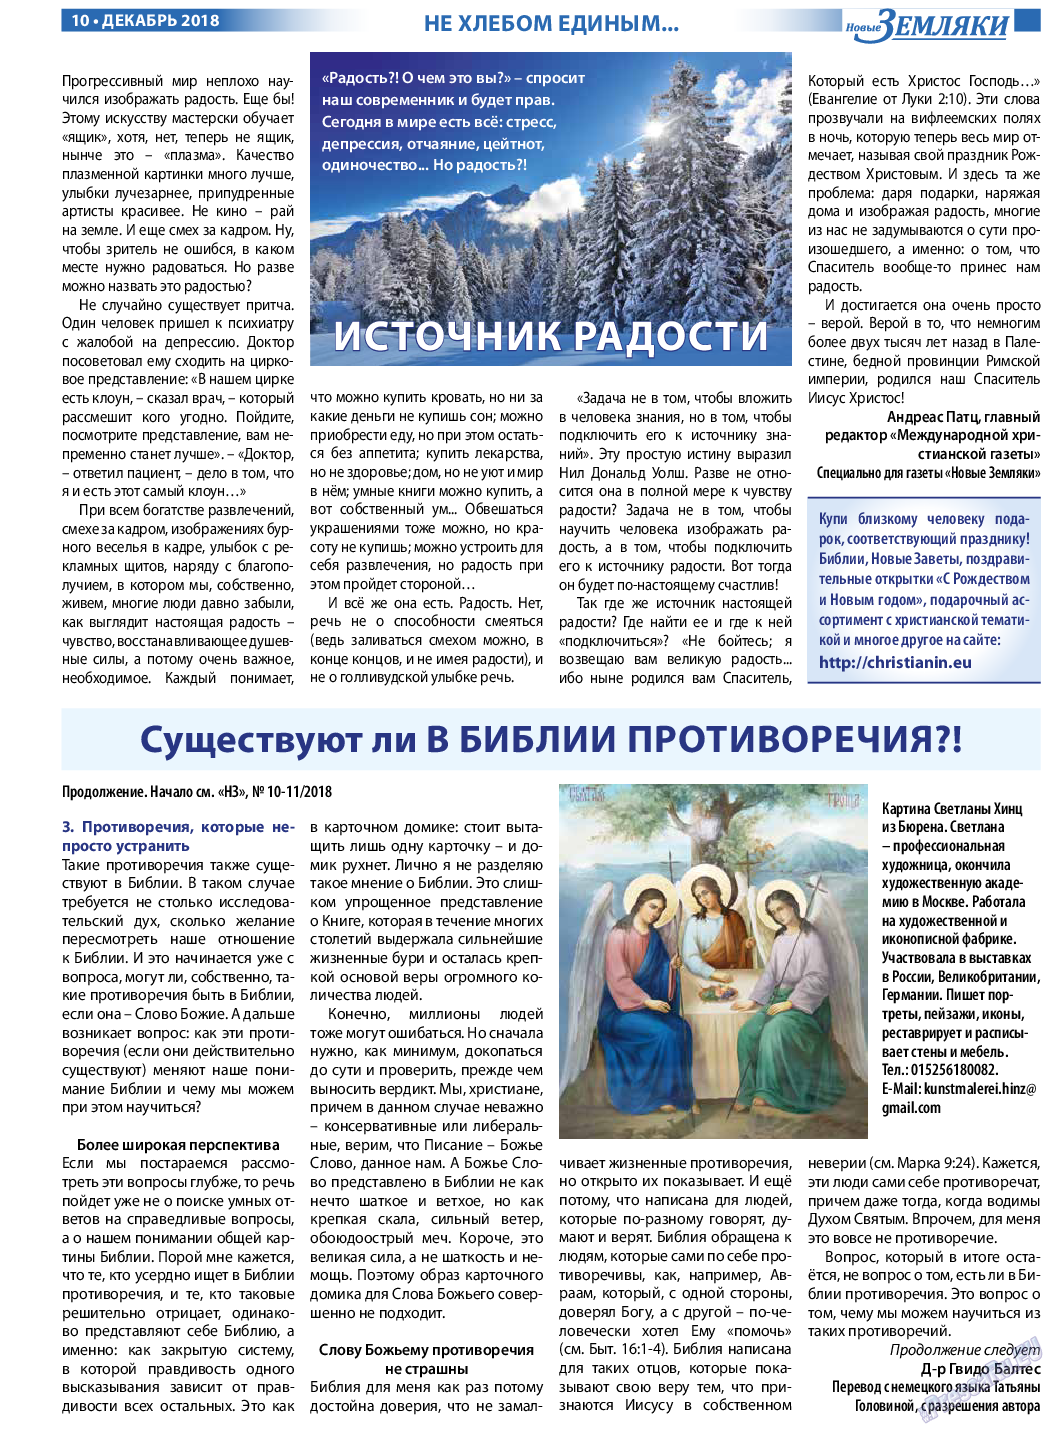 Новые Земляки, газета. 2018 №12 стр.10